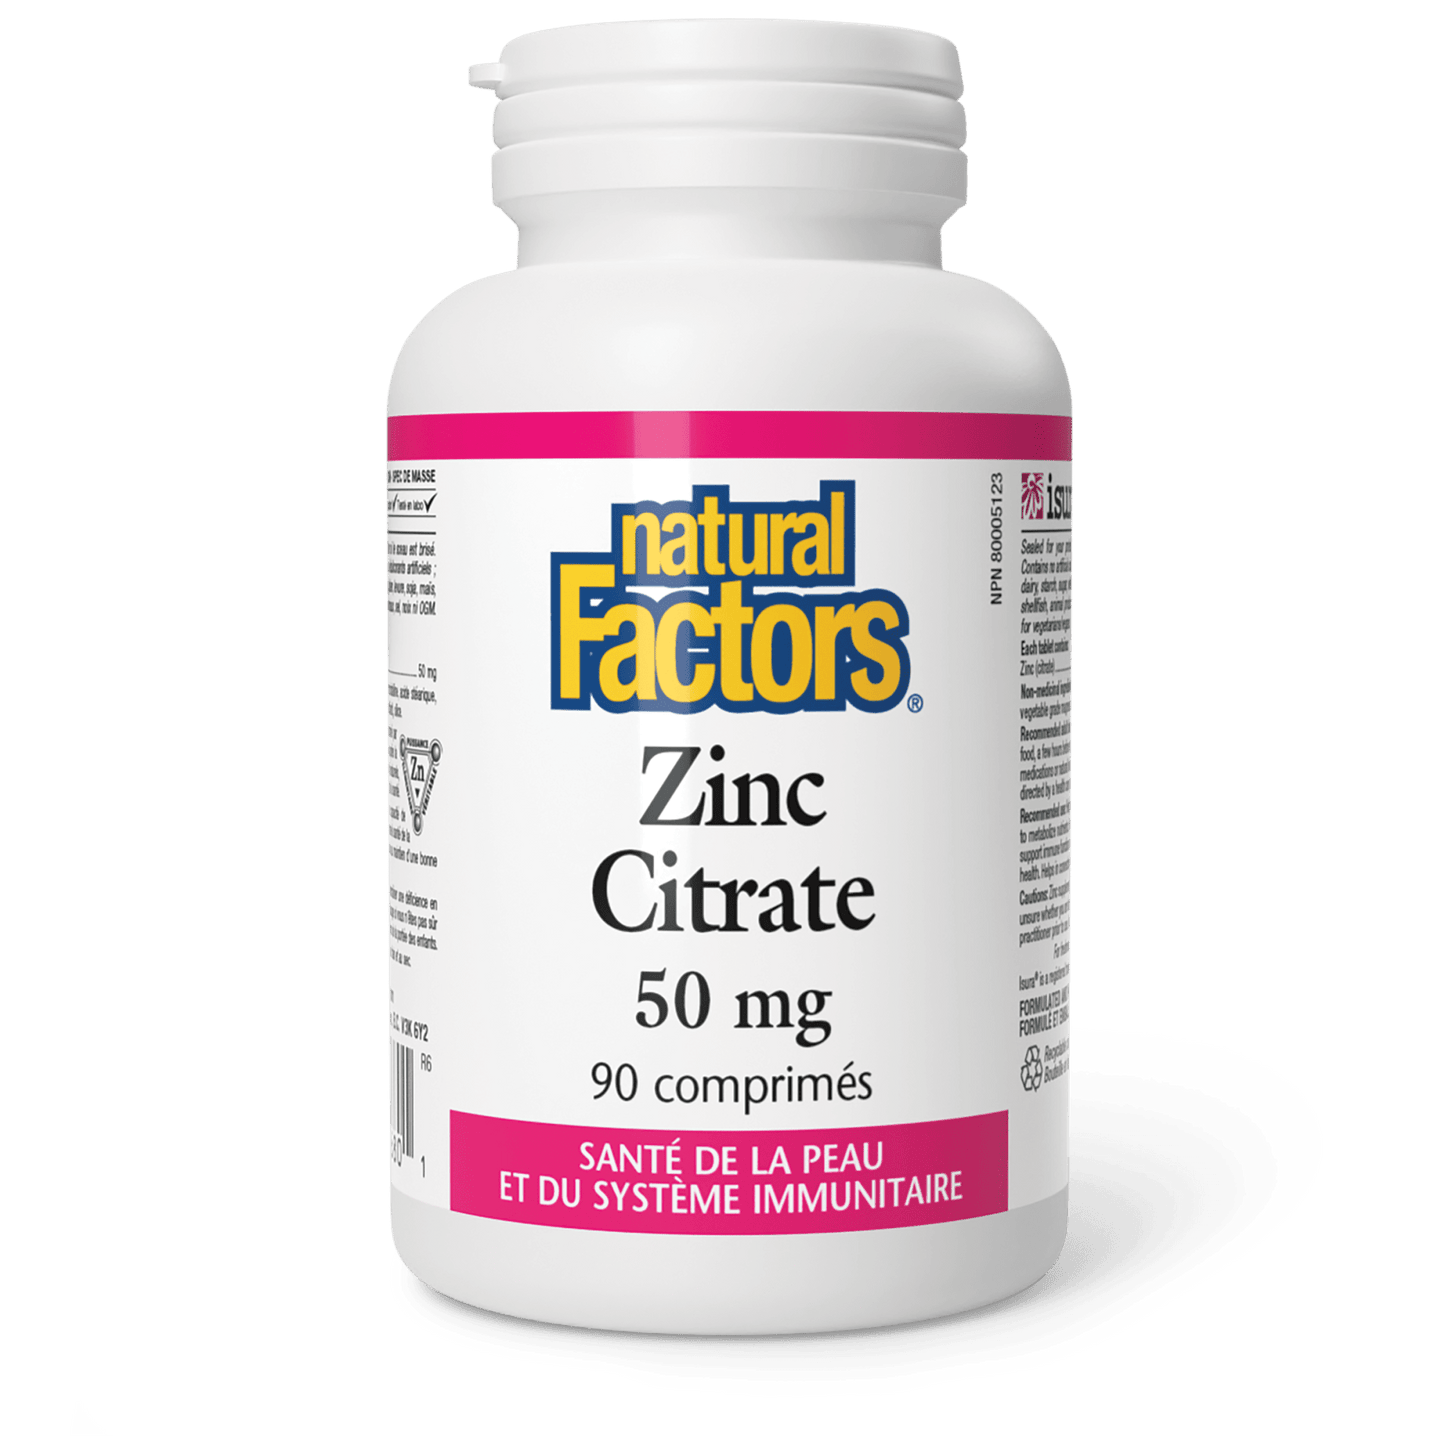 Zinc Citrate 50 mg, Natural Factors|v|image|1680